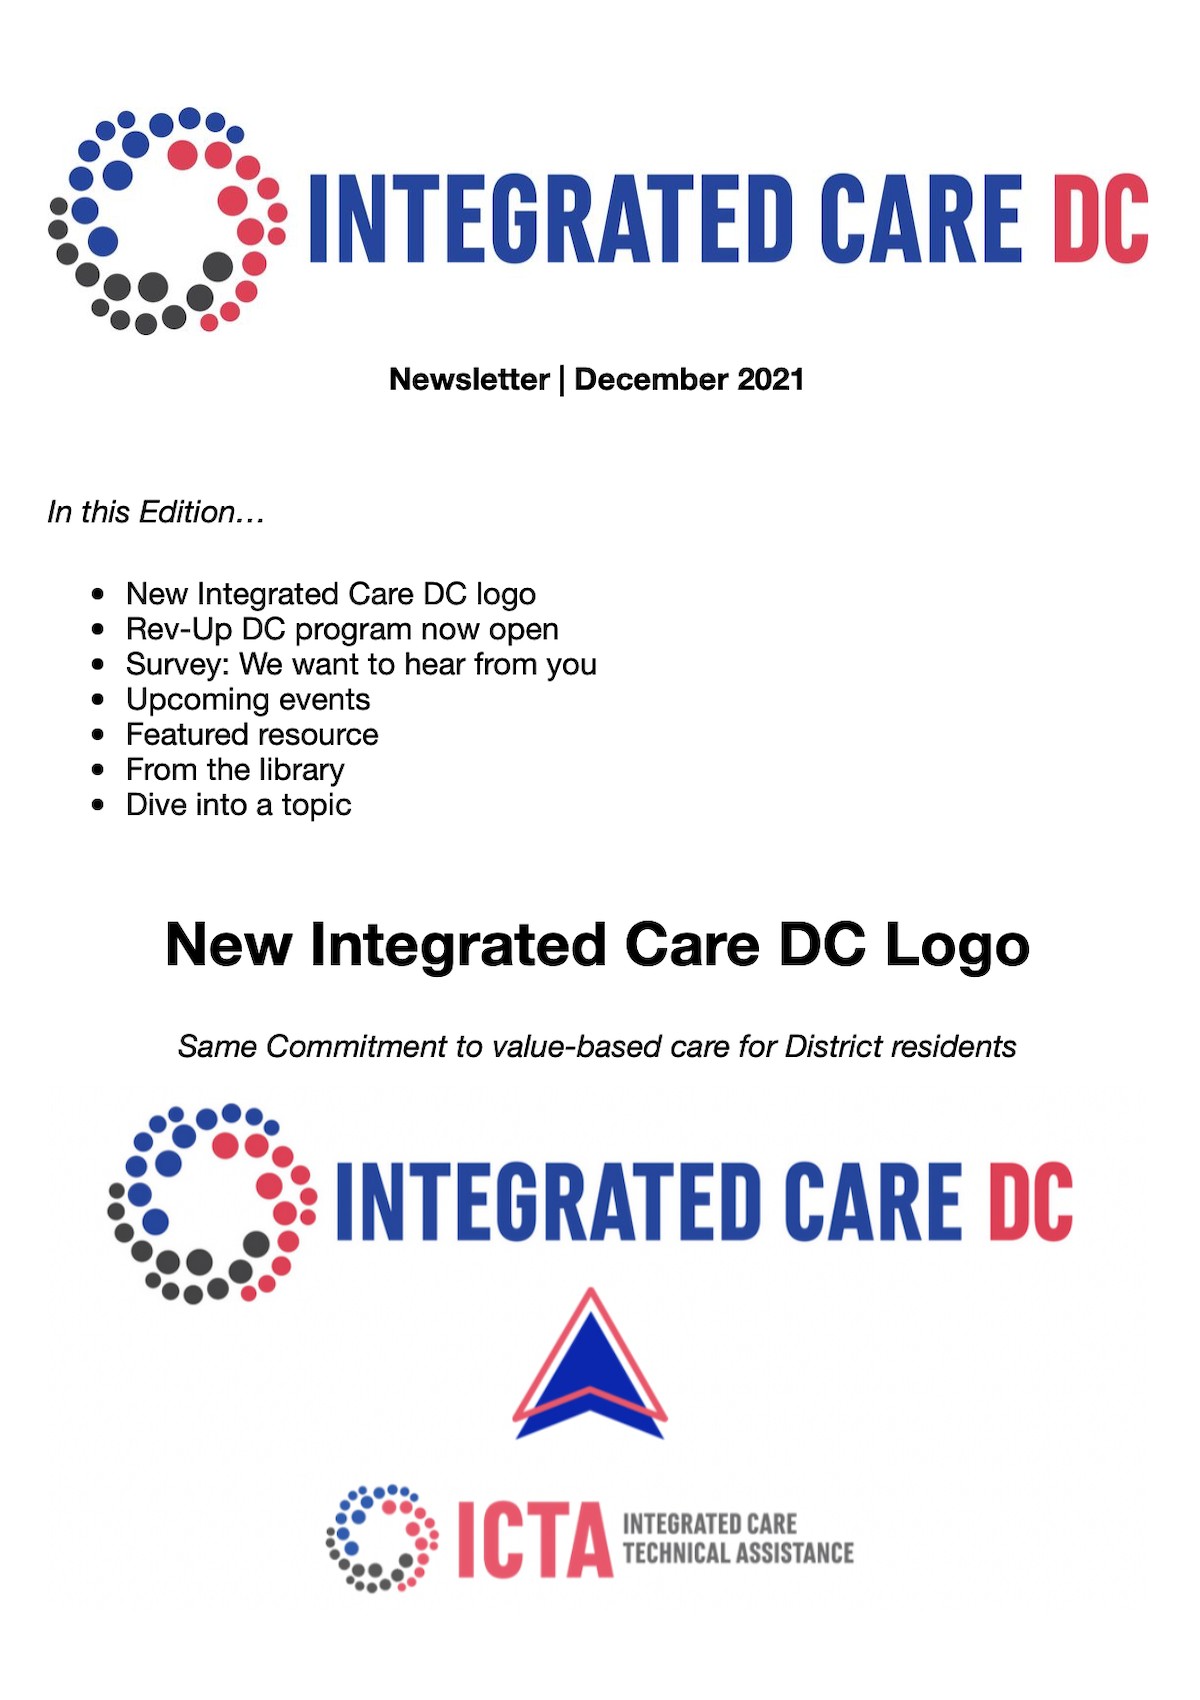 Integrated Care DC December 1 Newsletter Image